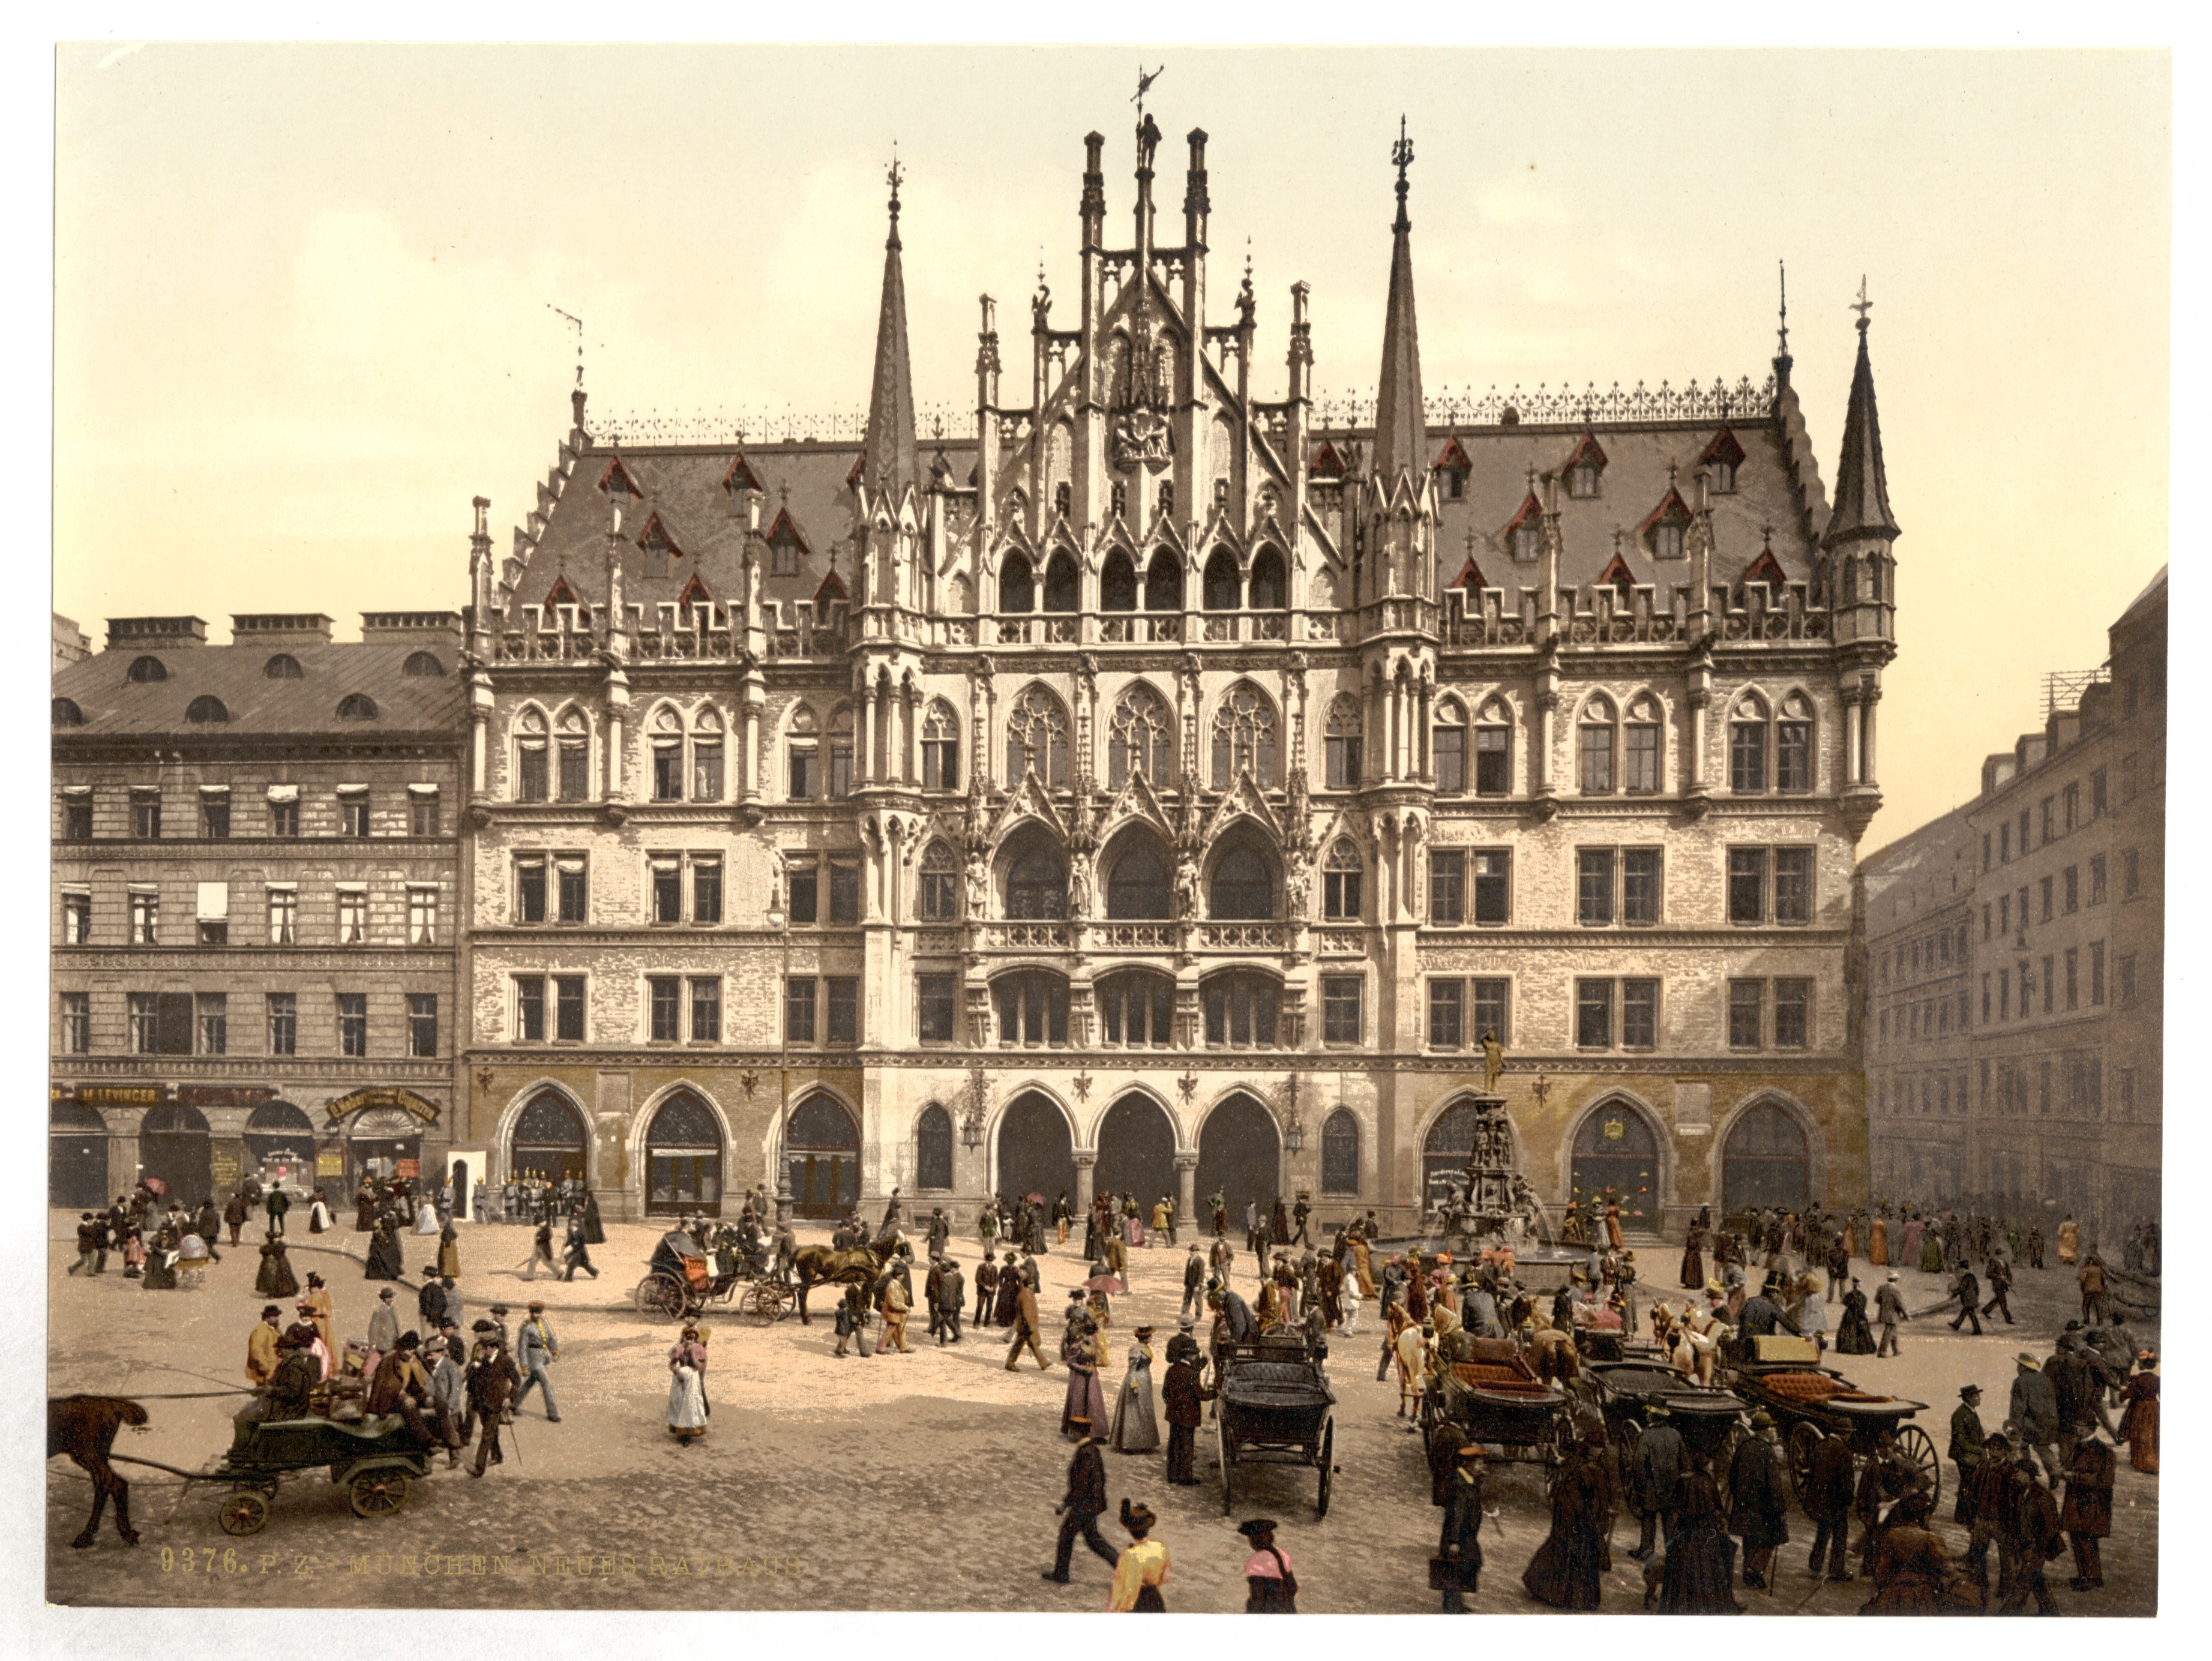 Начало 18 века в европе. Мюнхен 19 век. Мюнхен городская ратуша 19 век. Мариенплац Старая ратуша. Германия в 19 в.